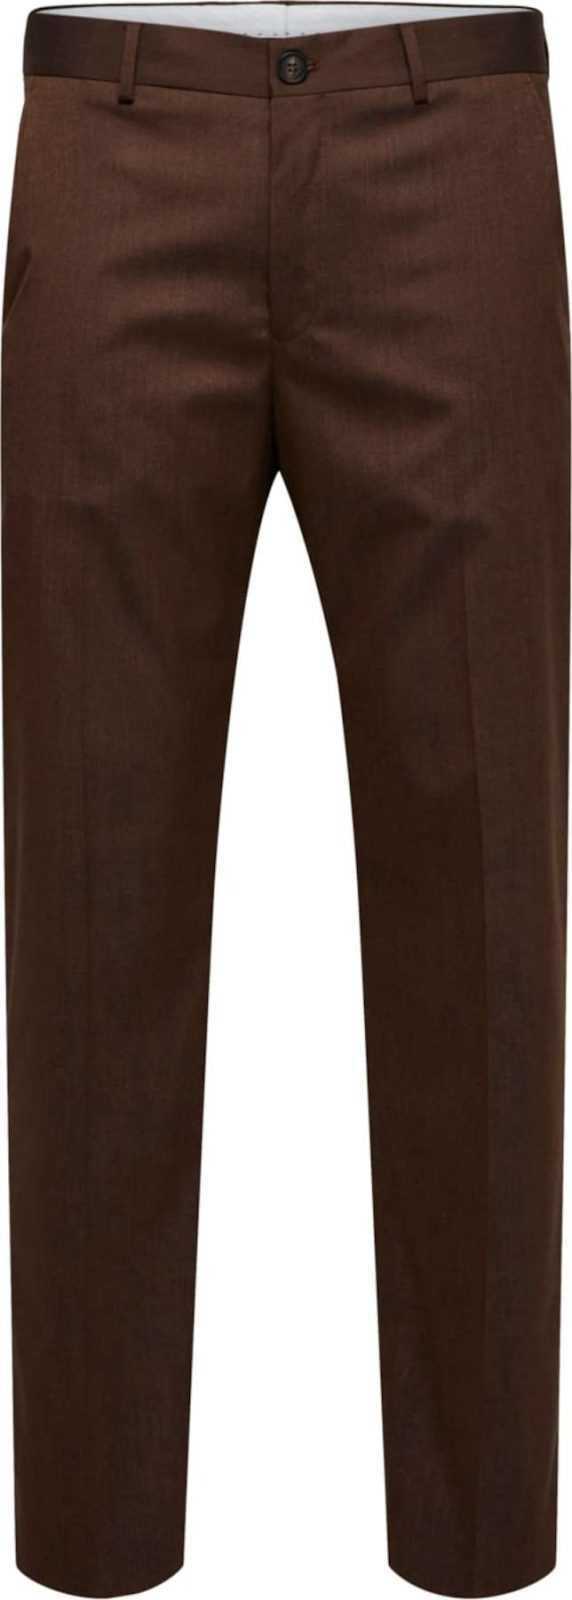 SELECTED HOMME Chino kalhoty tmavě hnědá